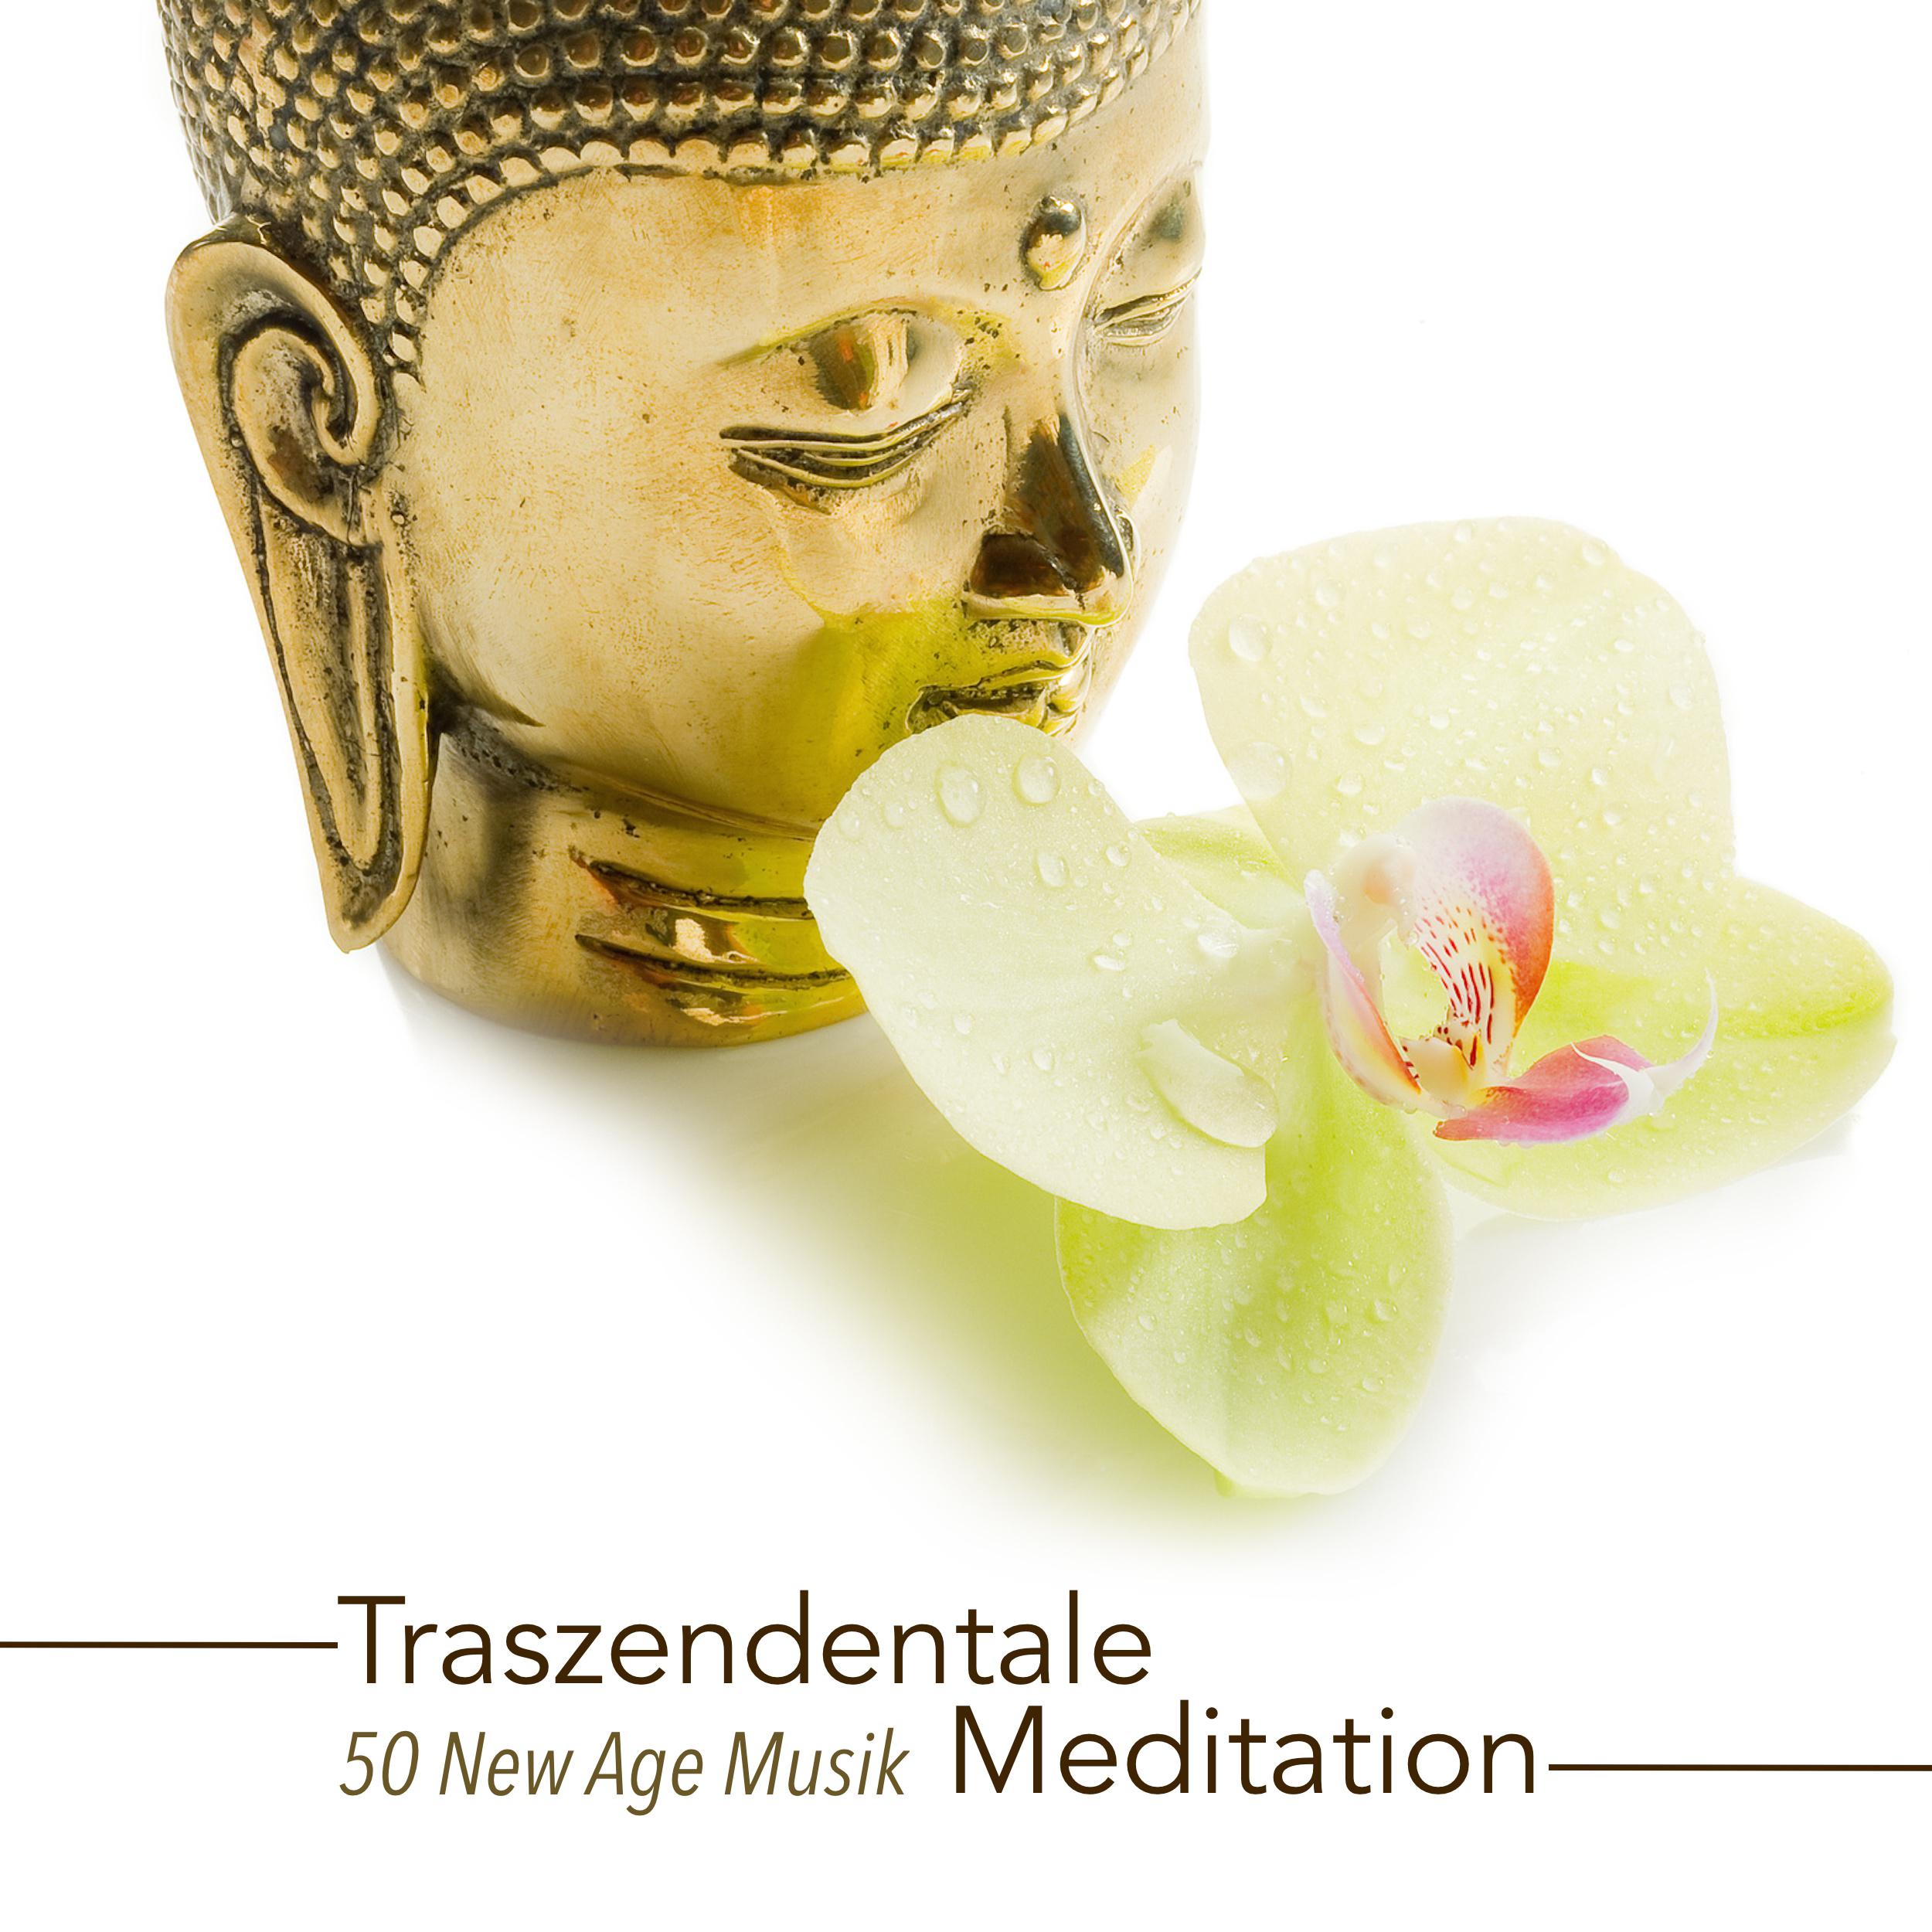 Traszendentale Meditation  50 New Age Musik fü r Klangmassage und Musiktherapie w hrend der Meditation